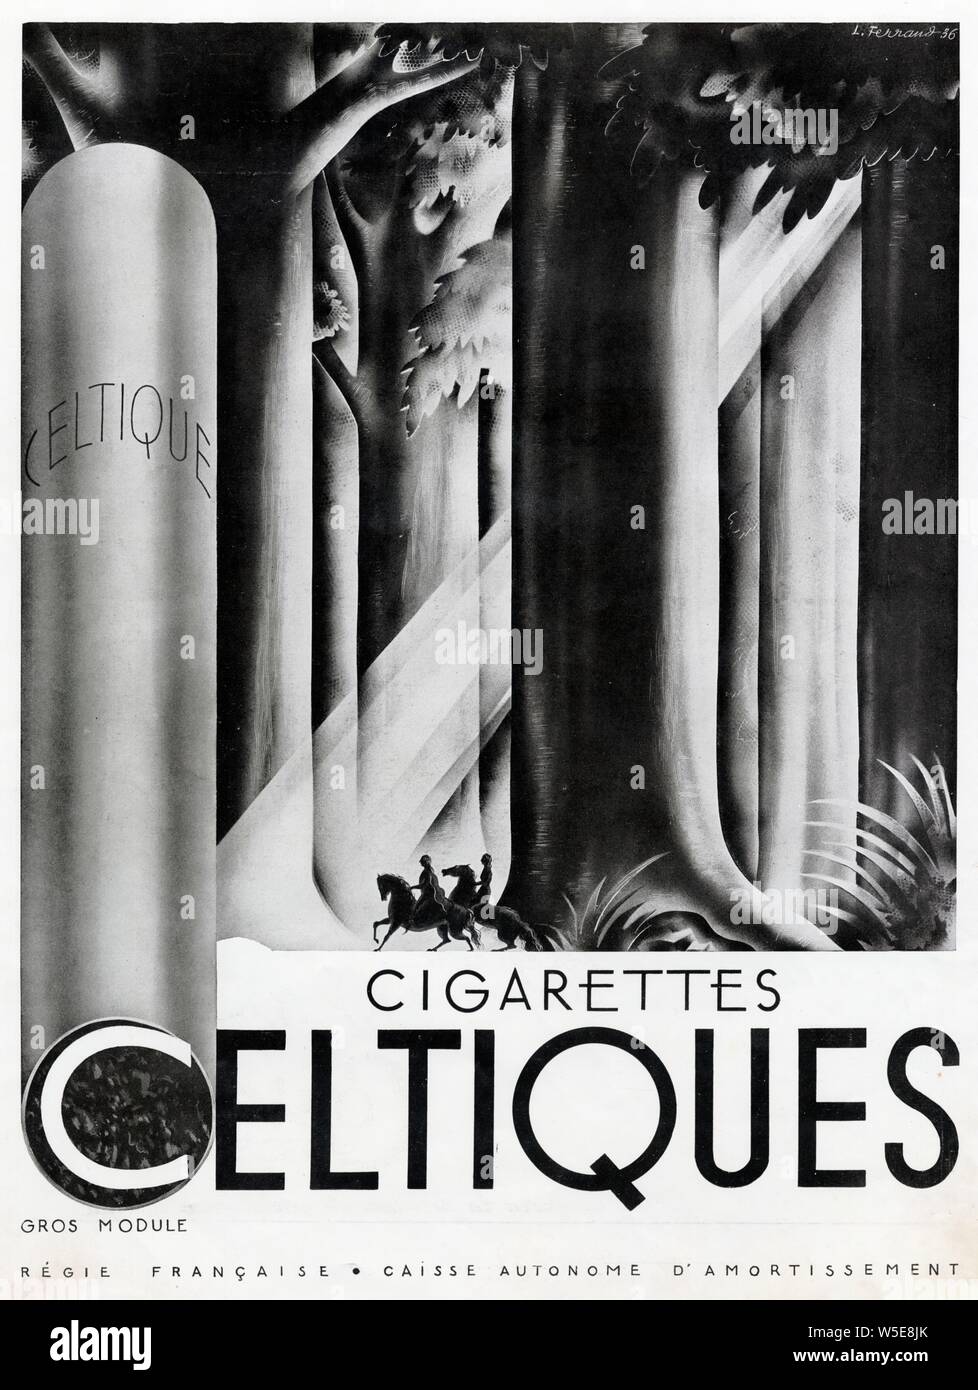 Publicité ancienne. 1937. Cigarettes Celtiques Stock Photo